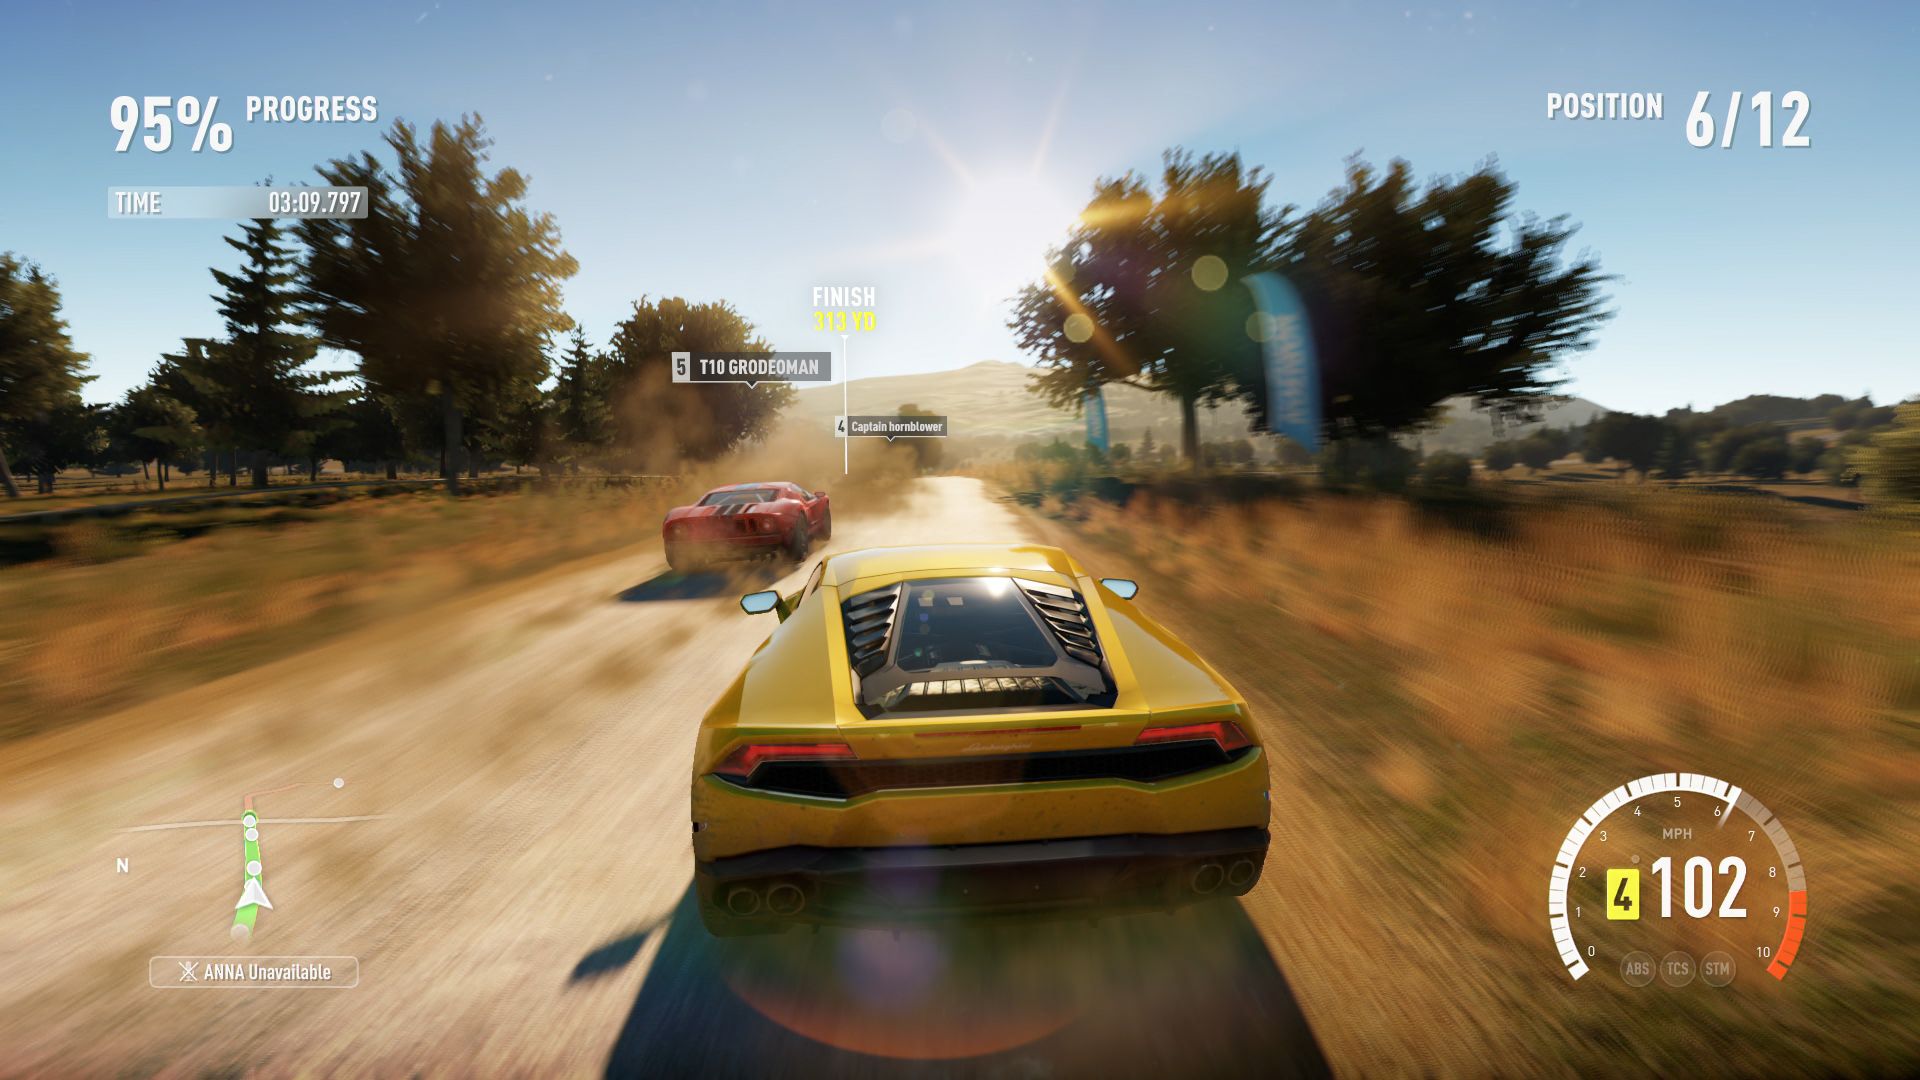 Forza Horizon 2 Review (Xbox One)